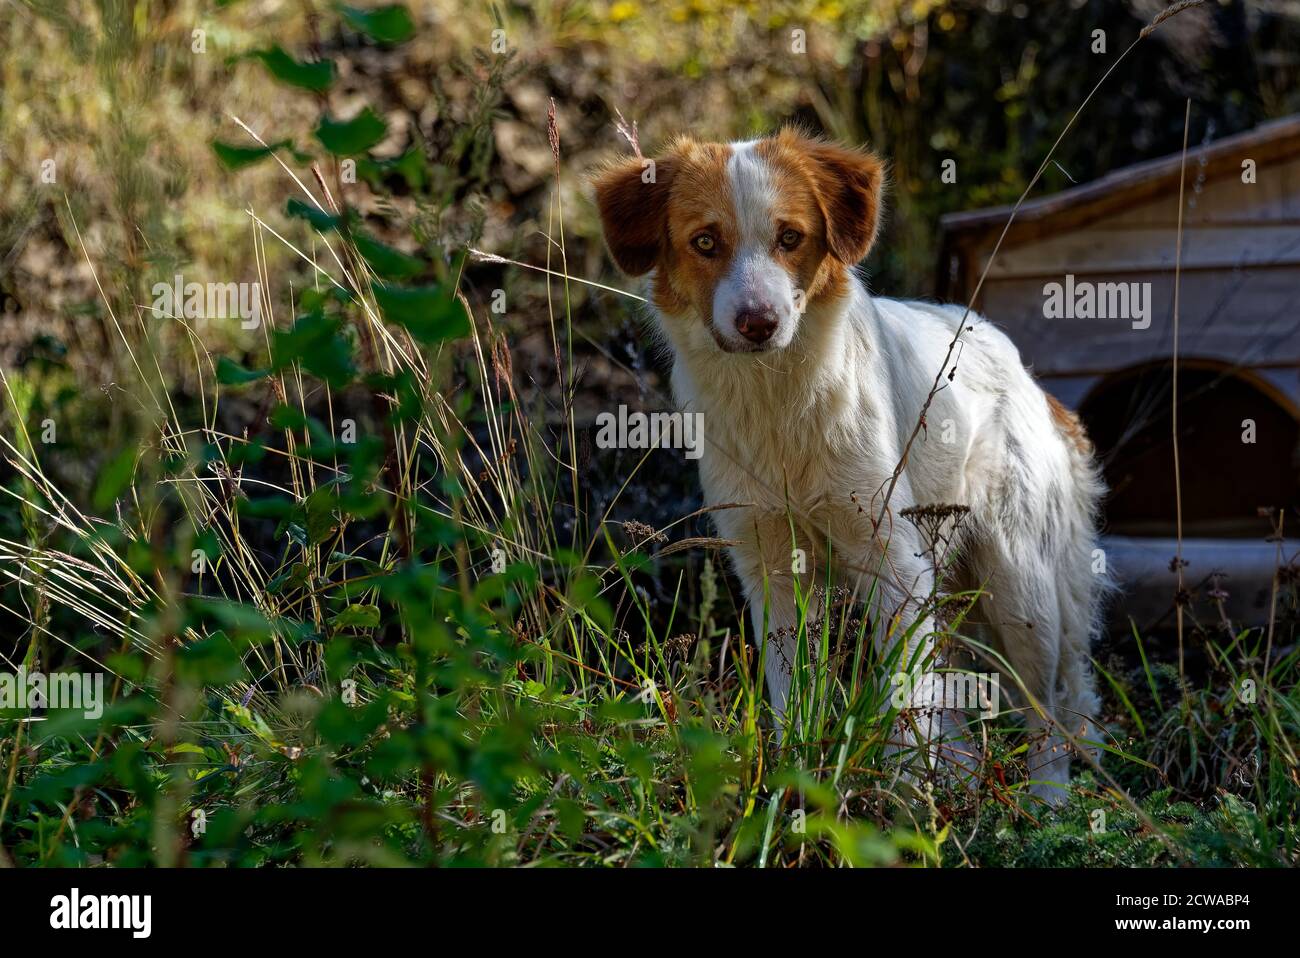 Cane vagato bianco e marrone guardando la macchina fotografica, ritratto di animale carino Foto Stock